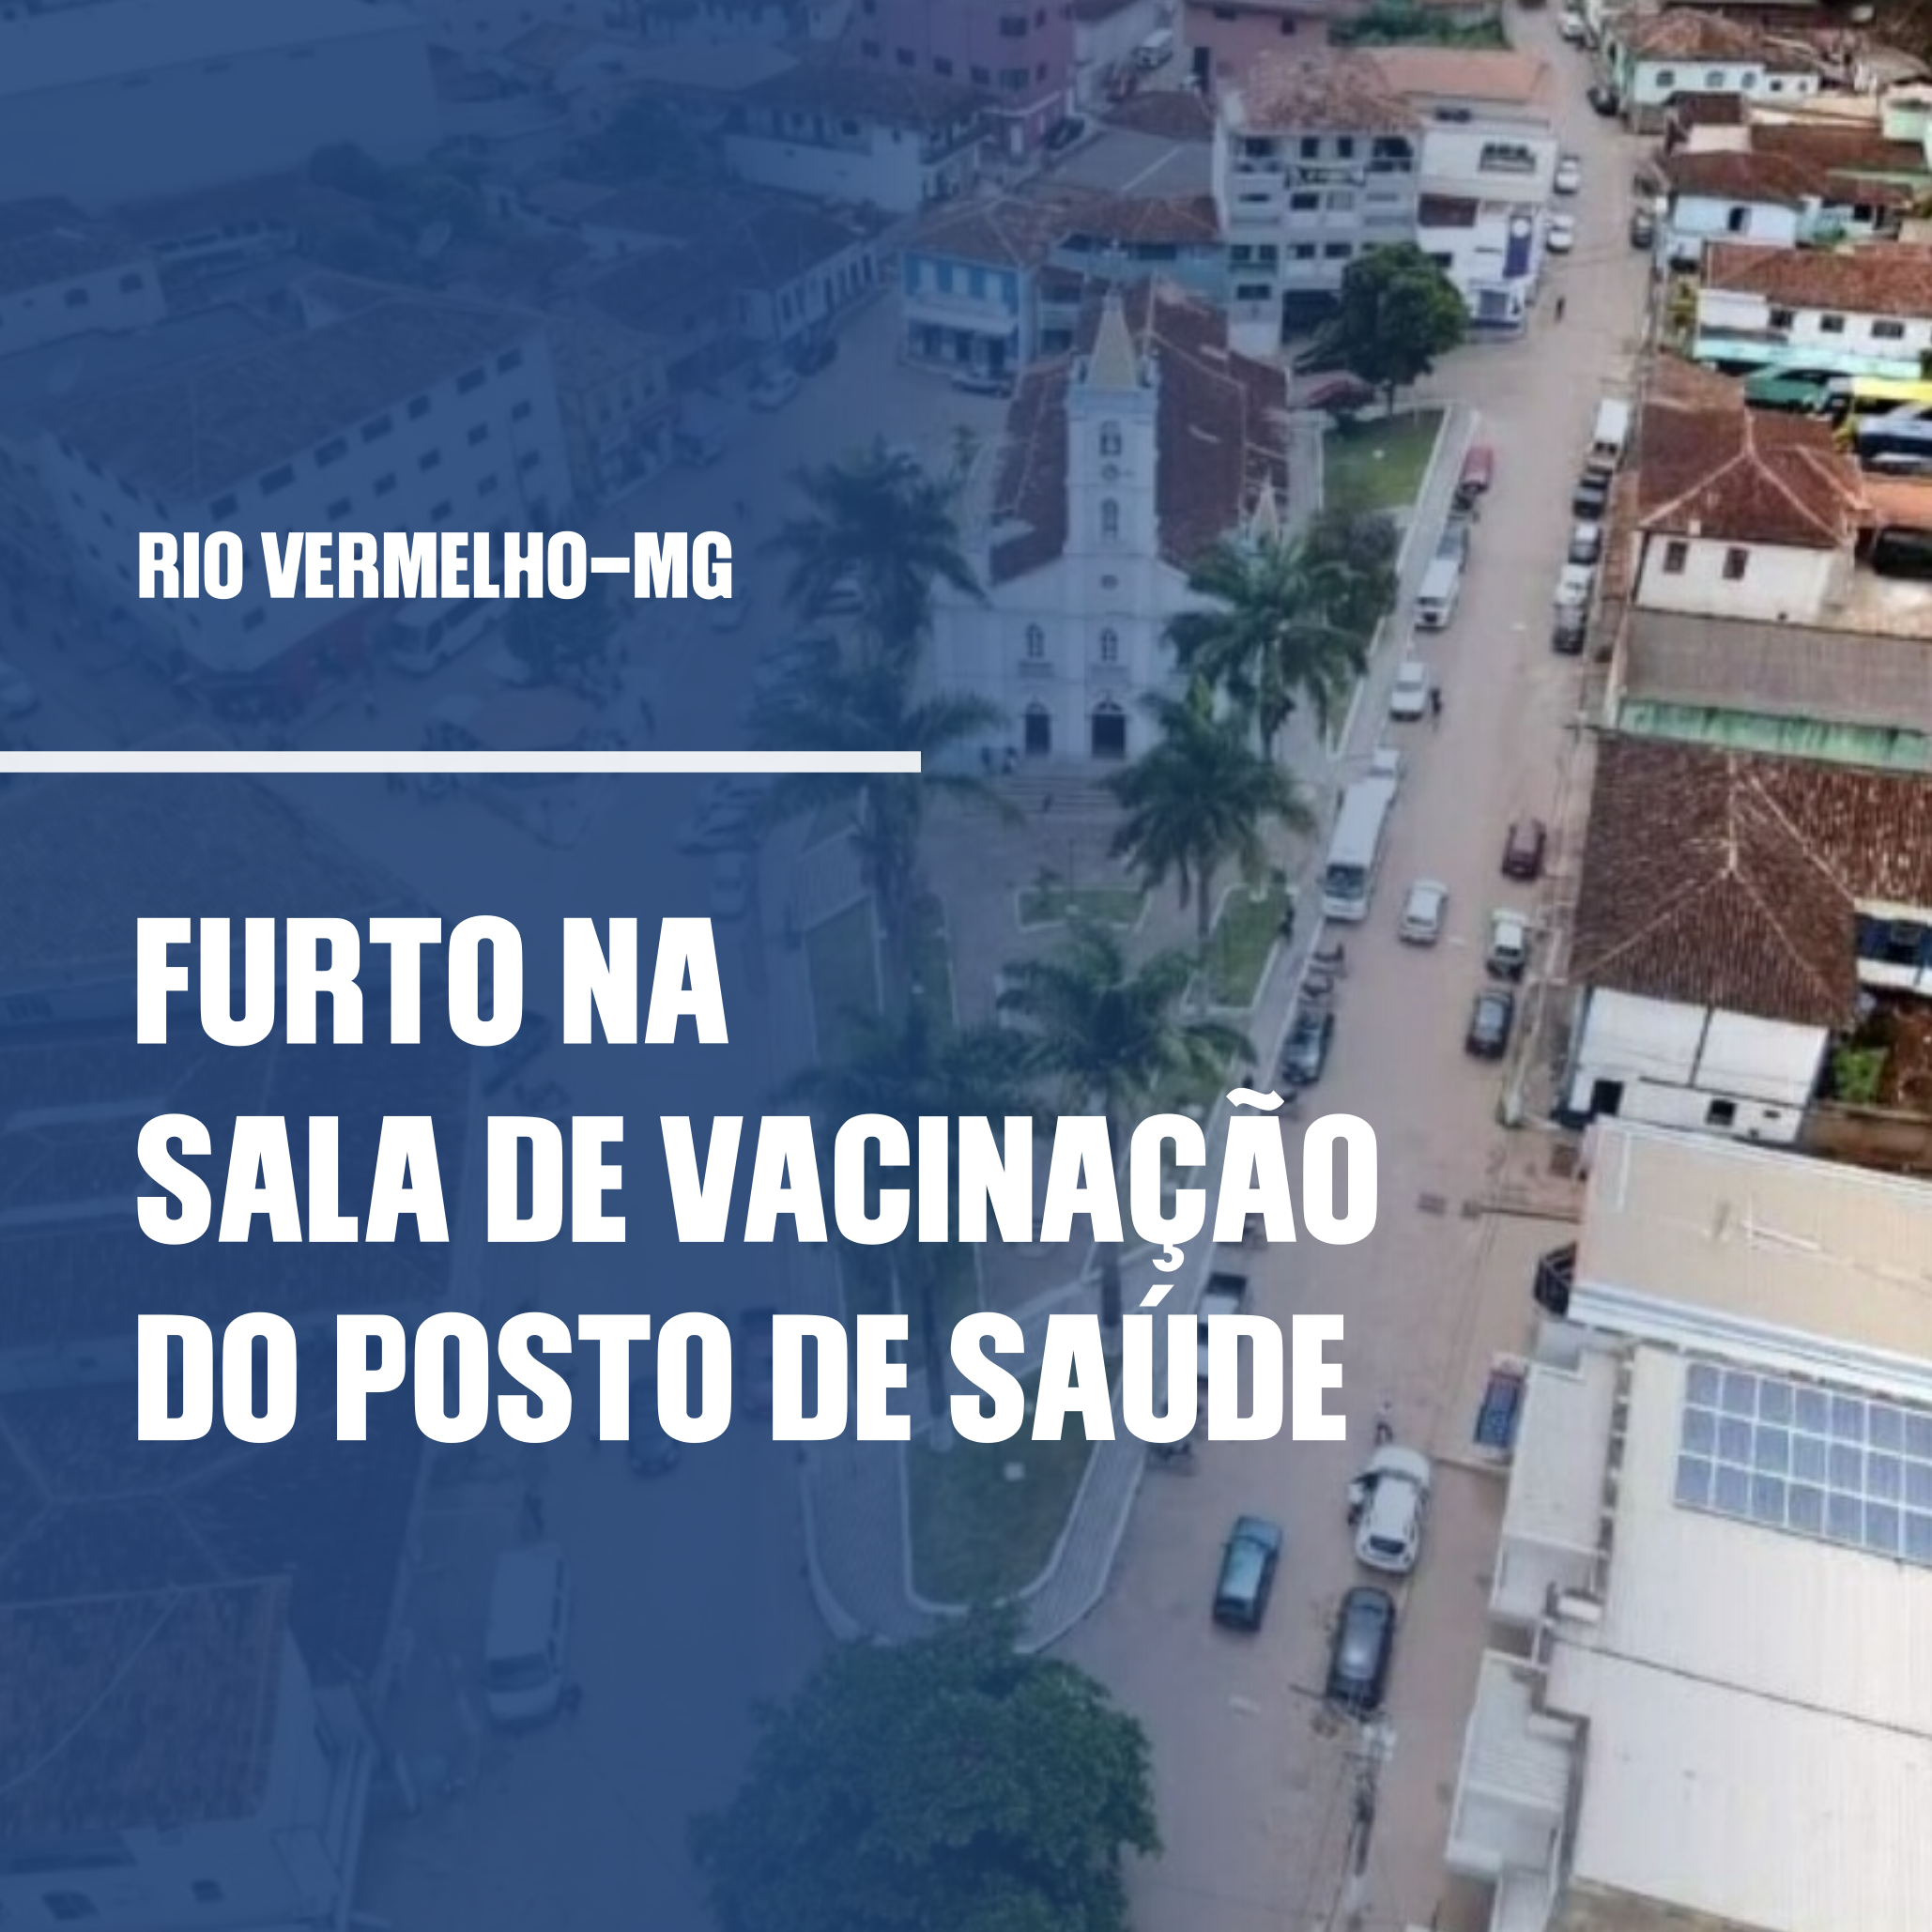 You are currently viewing FURTO DE VACINA EM RIO VERMELHO